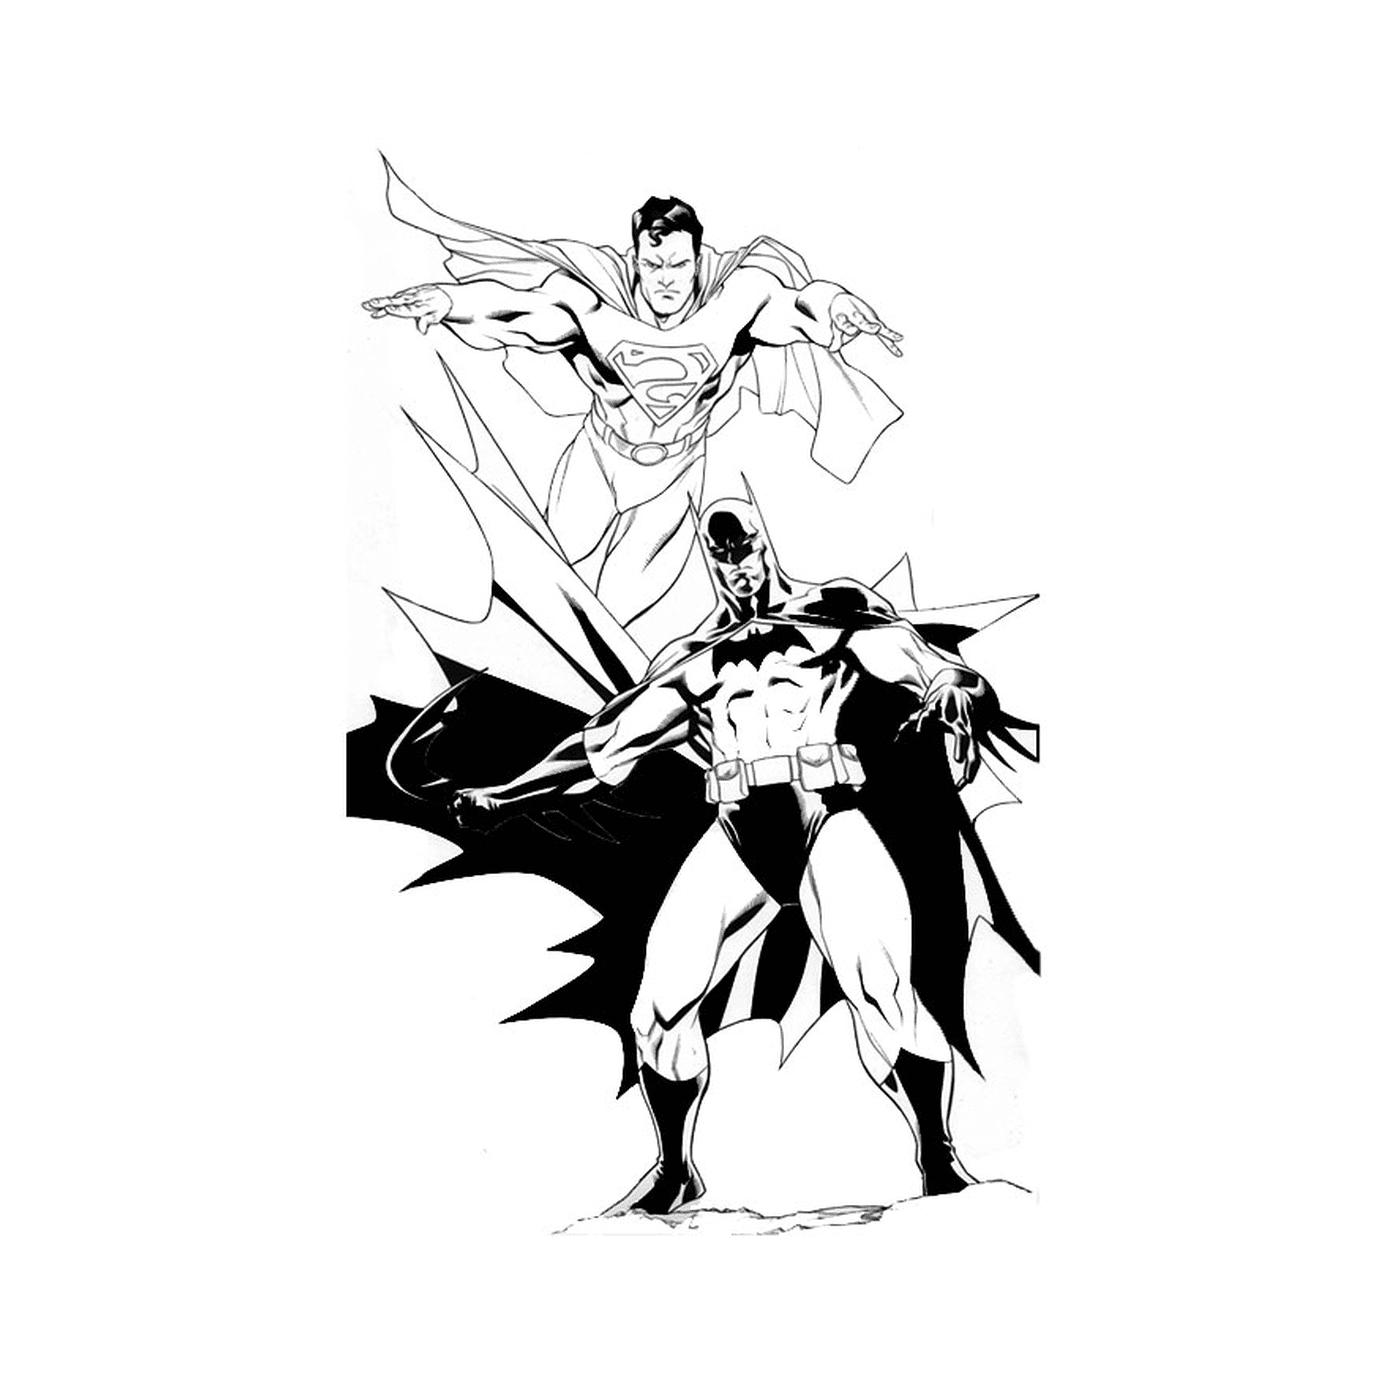  Batman and Superman 